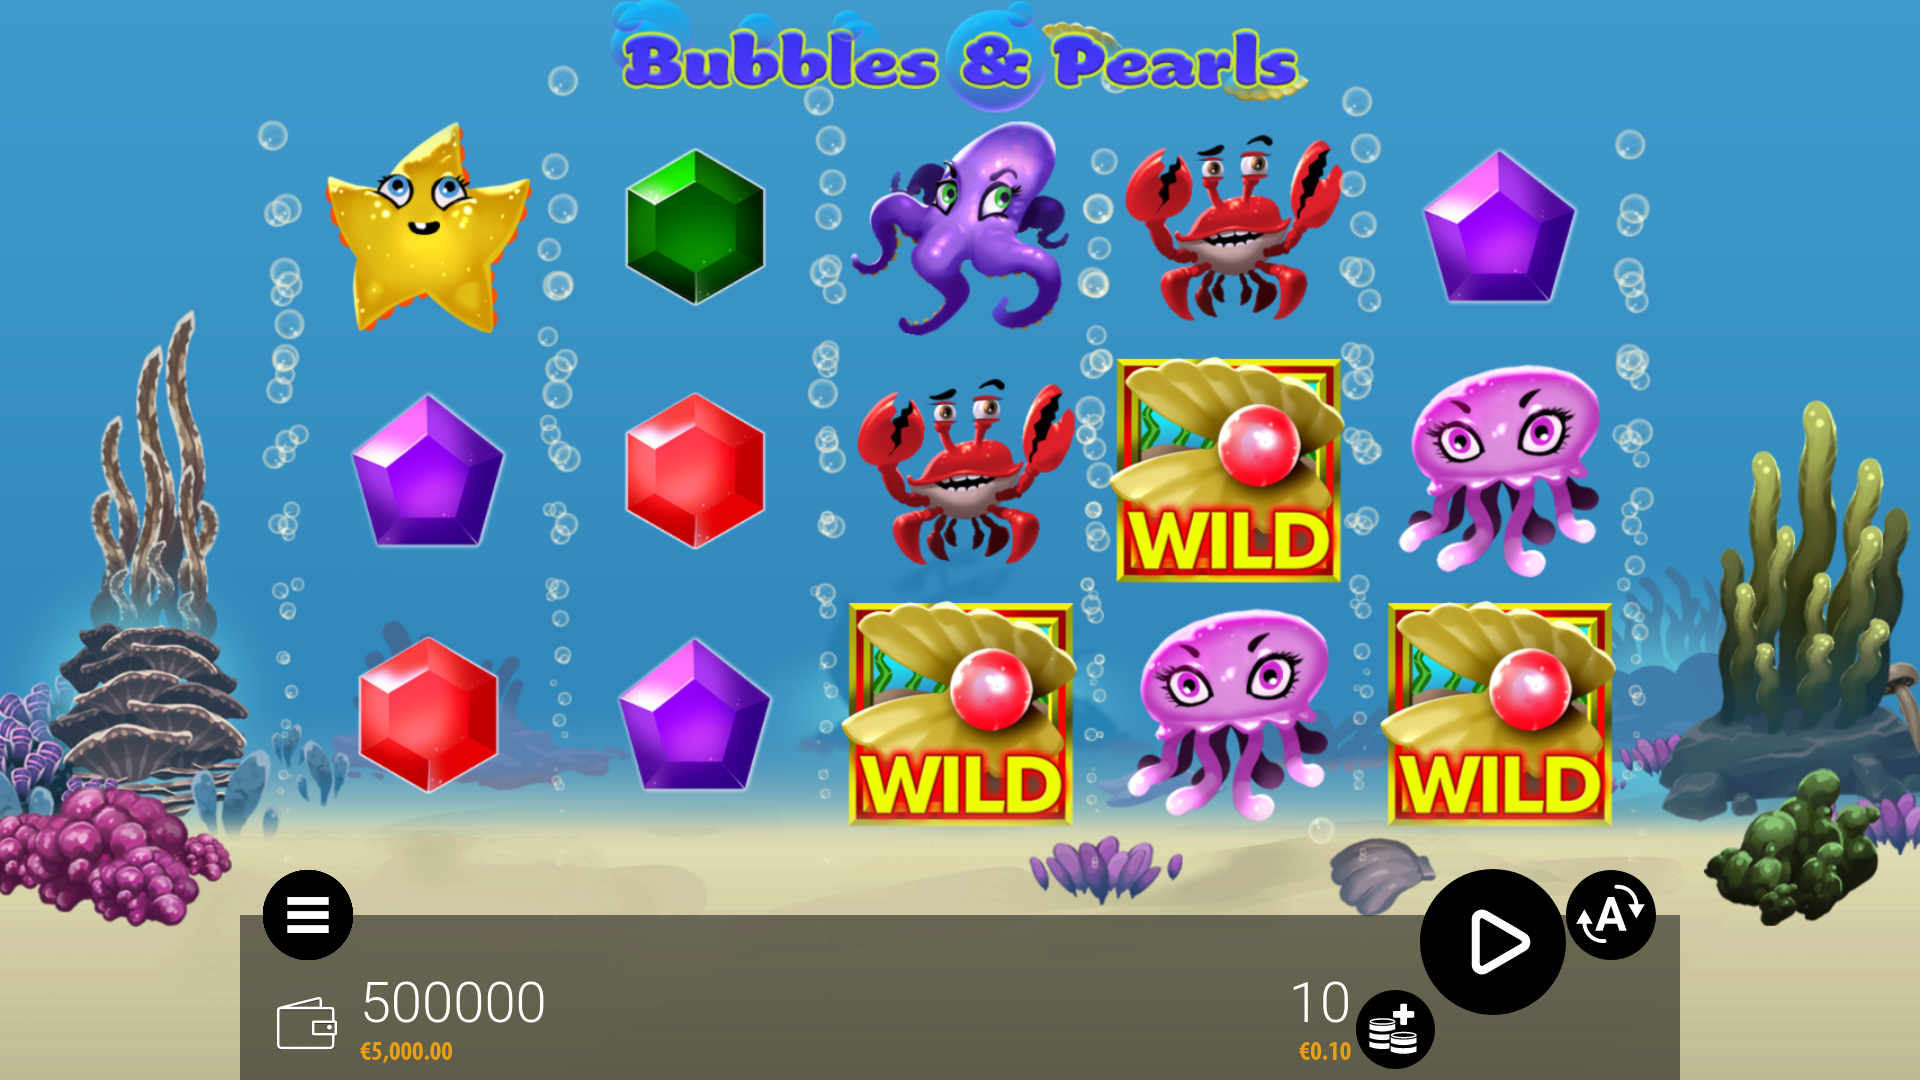 Bubbles & Pearls Wild